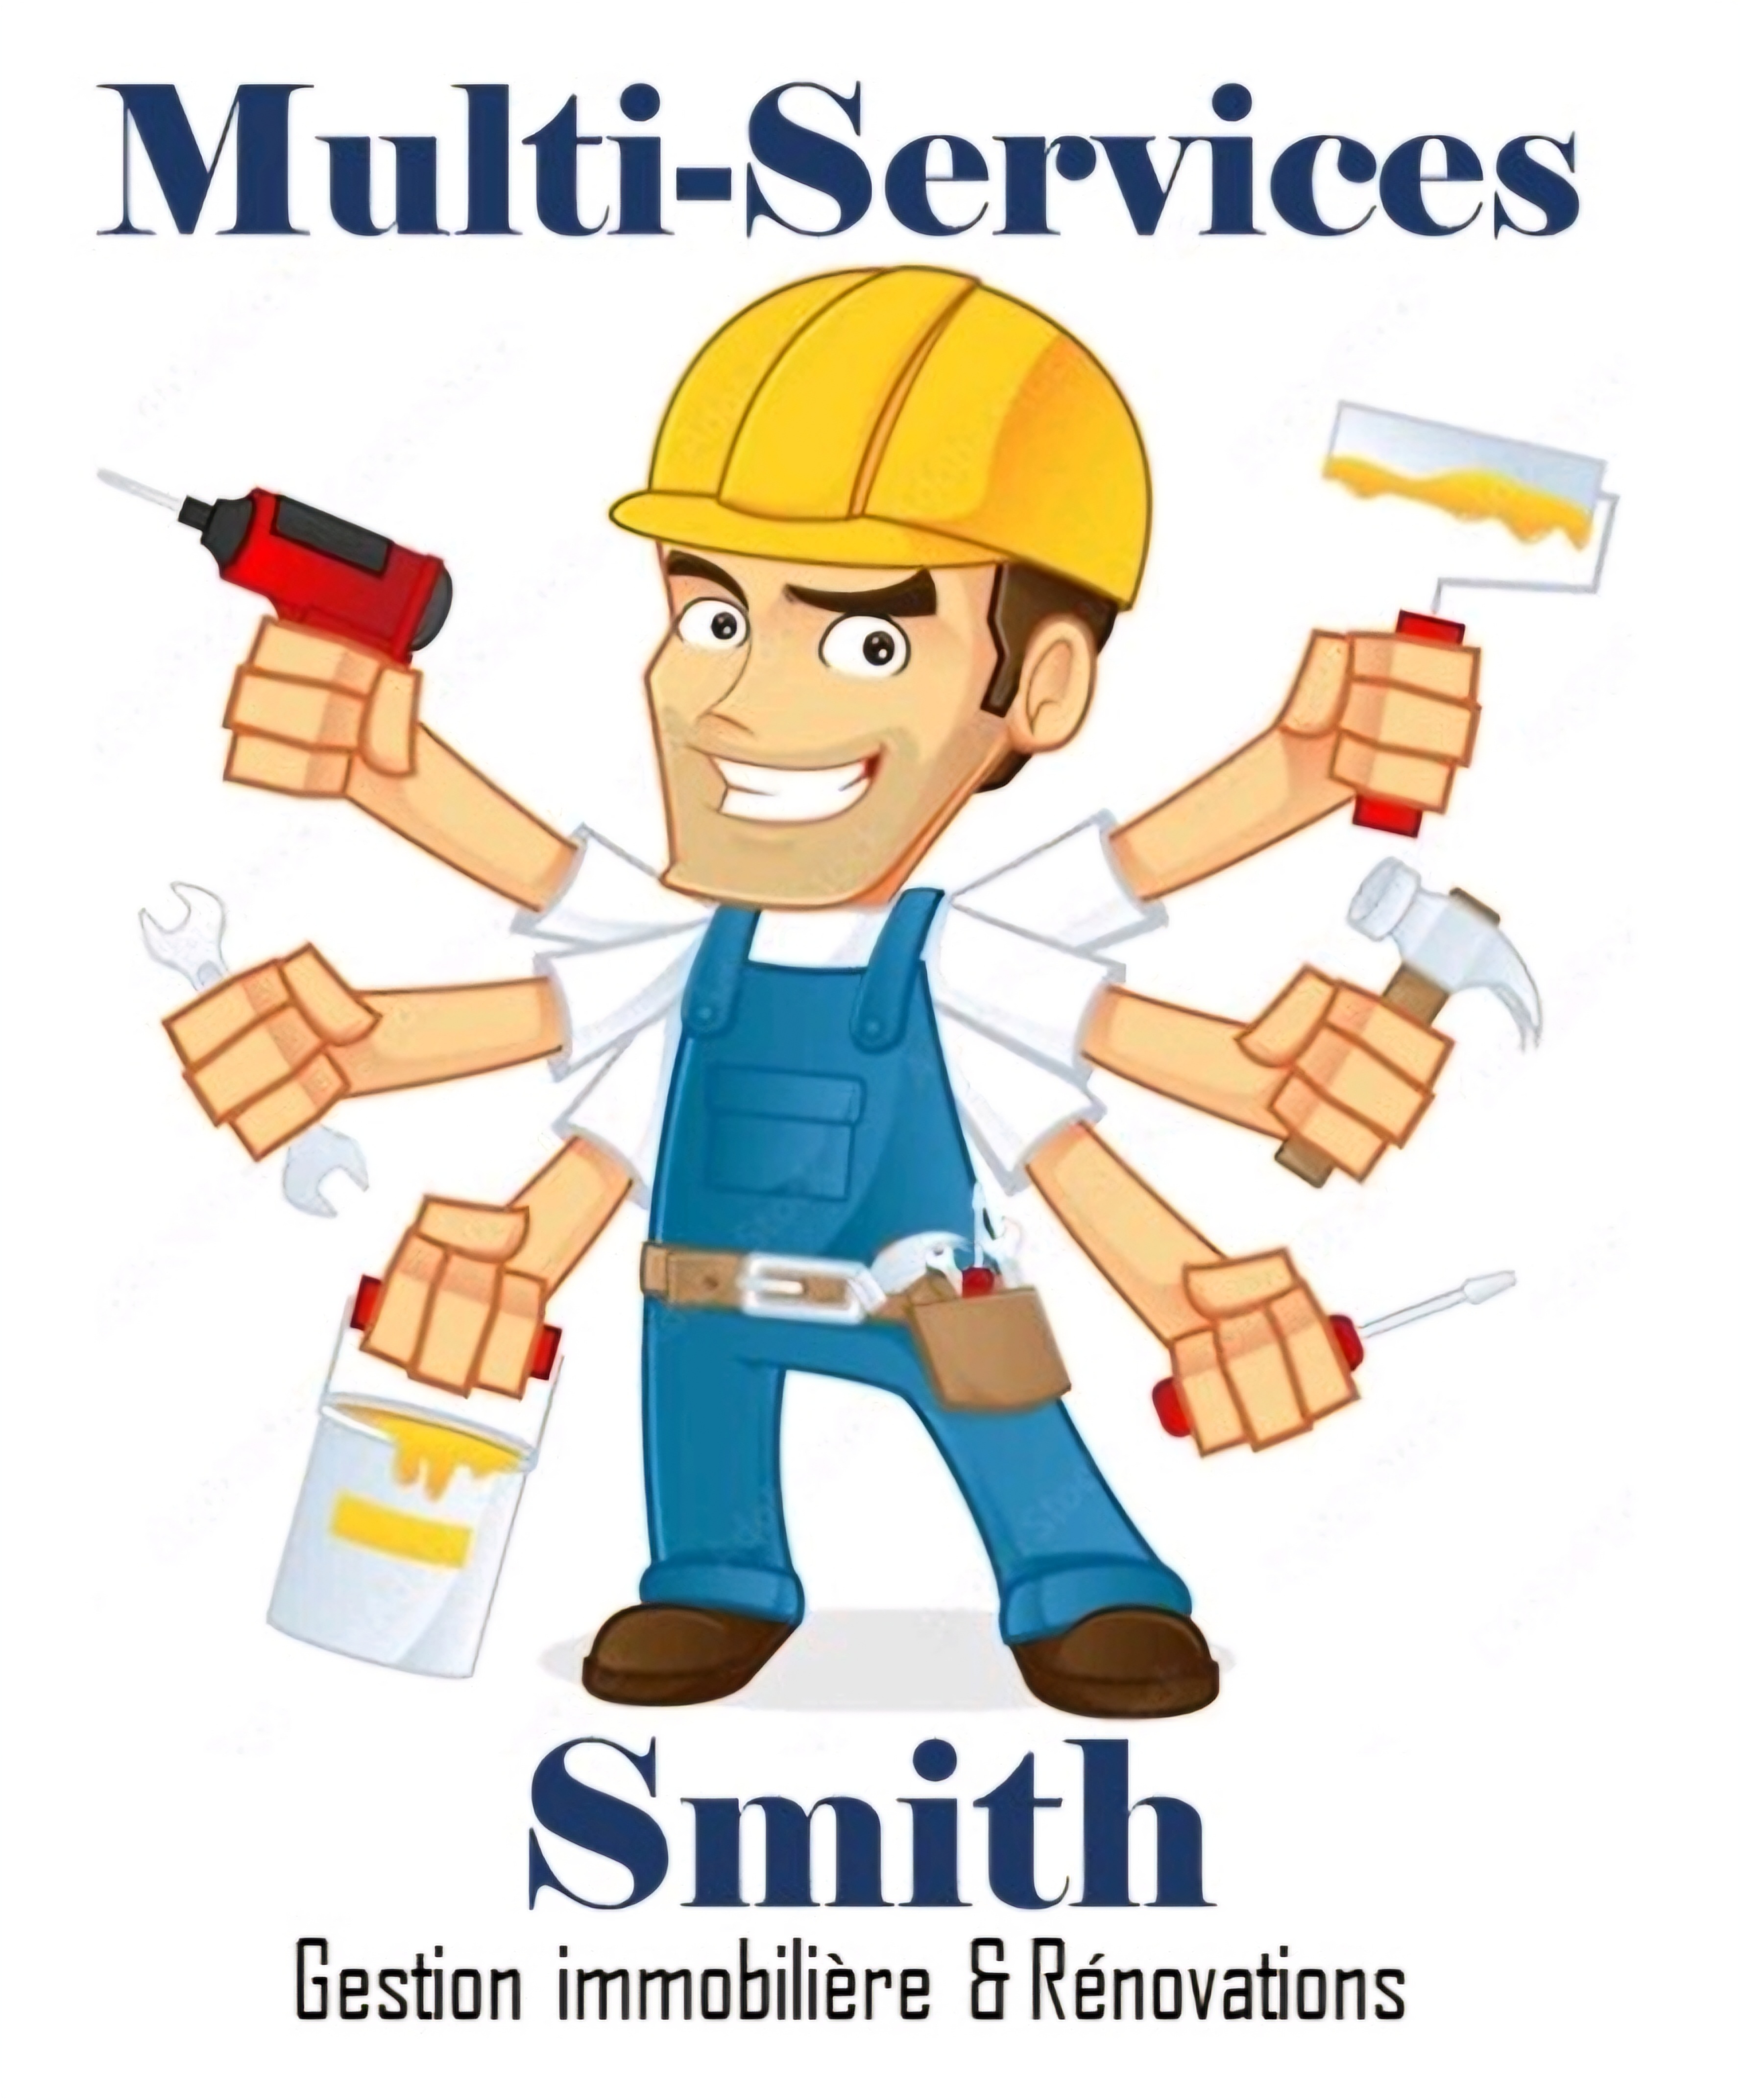 Multi-Services Smith